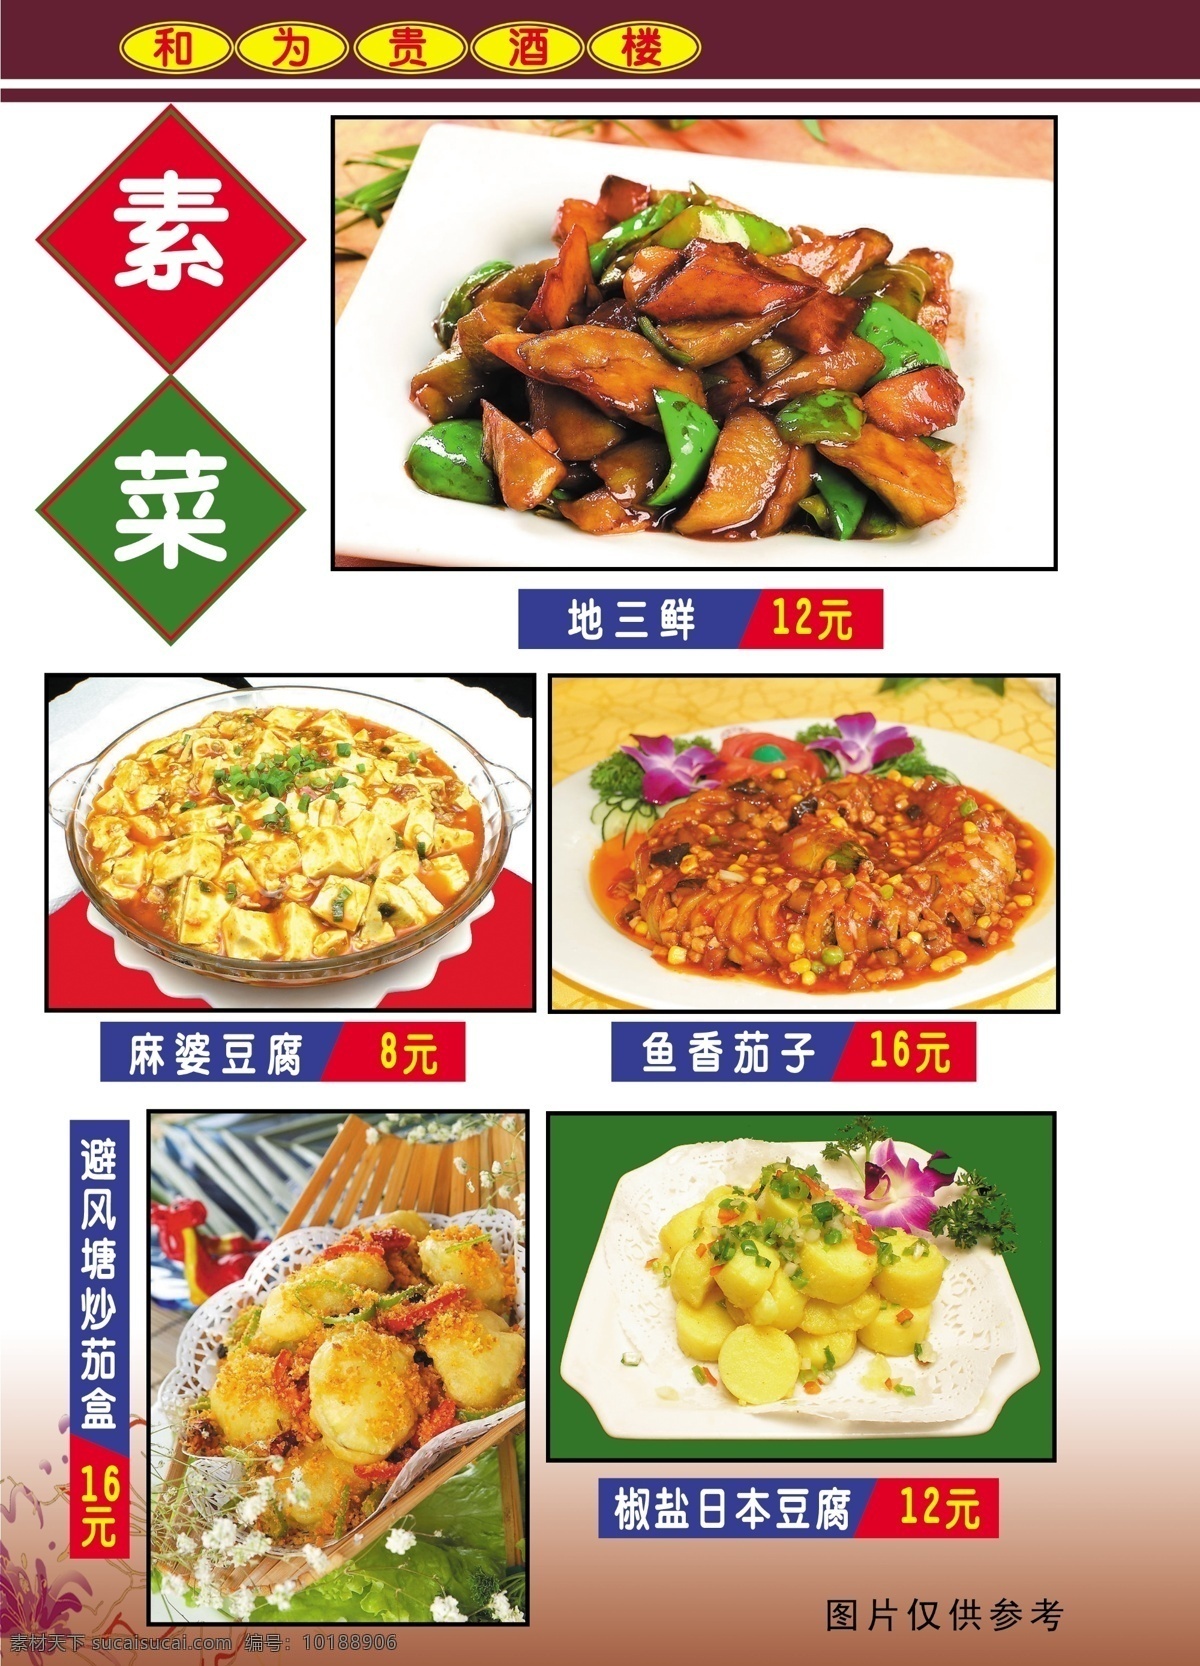 和为贵 酒楼 菜谱 食品餐饮 菜单菜谱 分层psd 平面广告 海报 设计素材 平面模板 psd源文件 白色